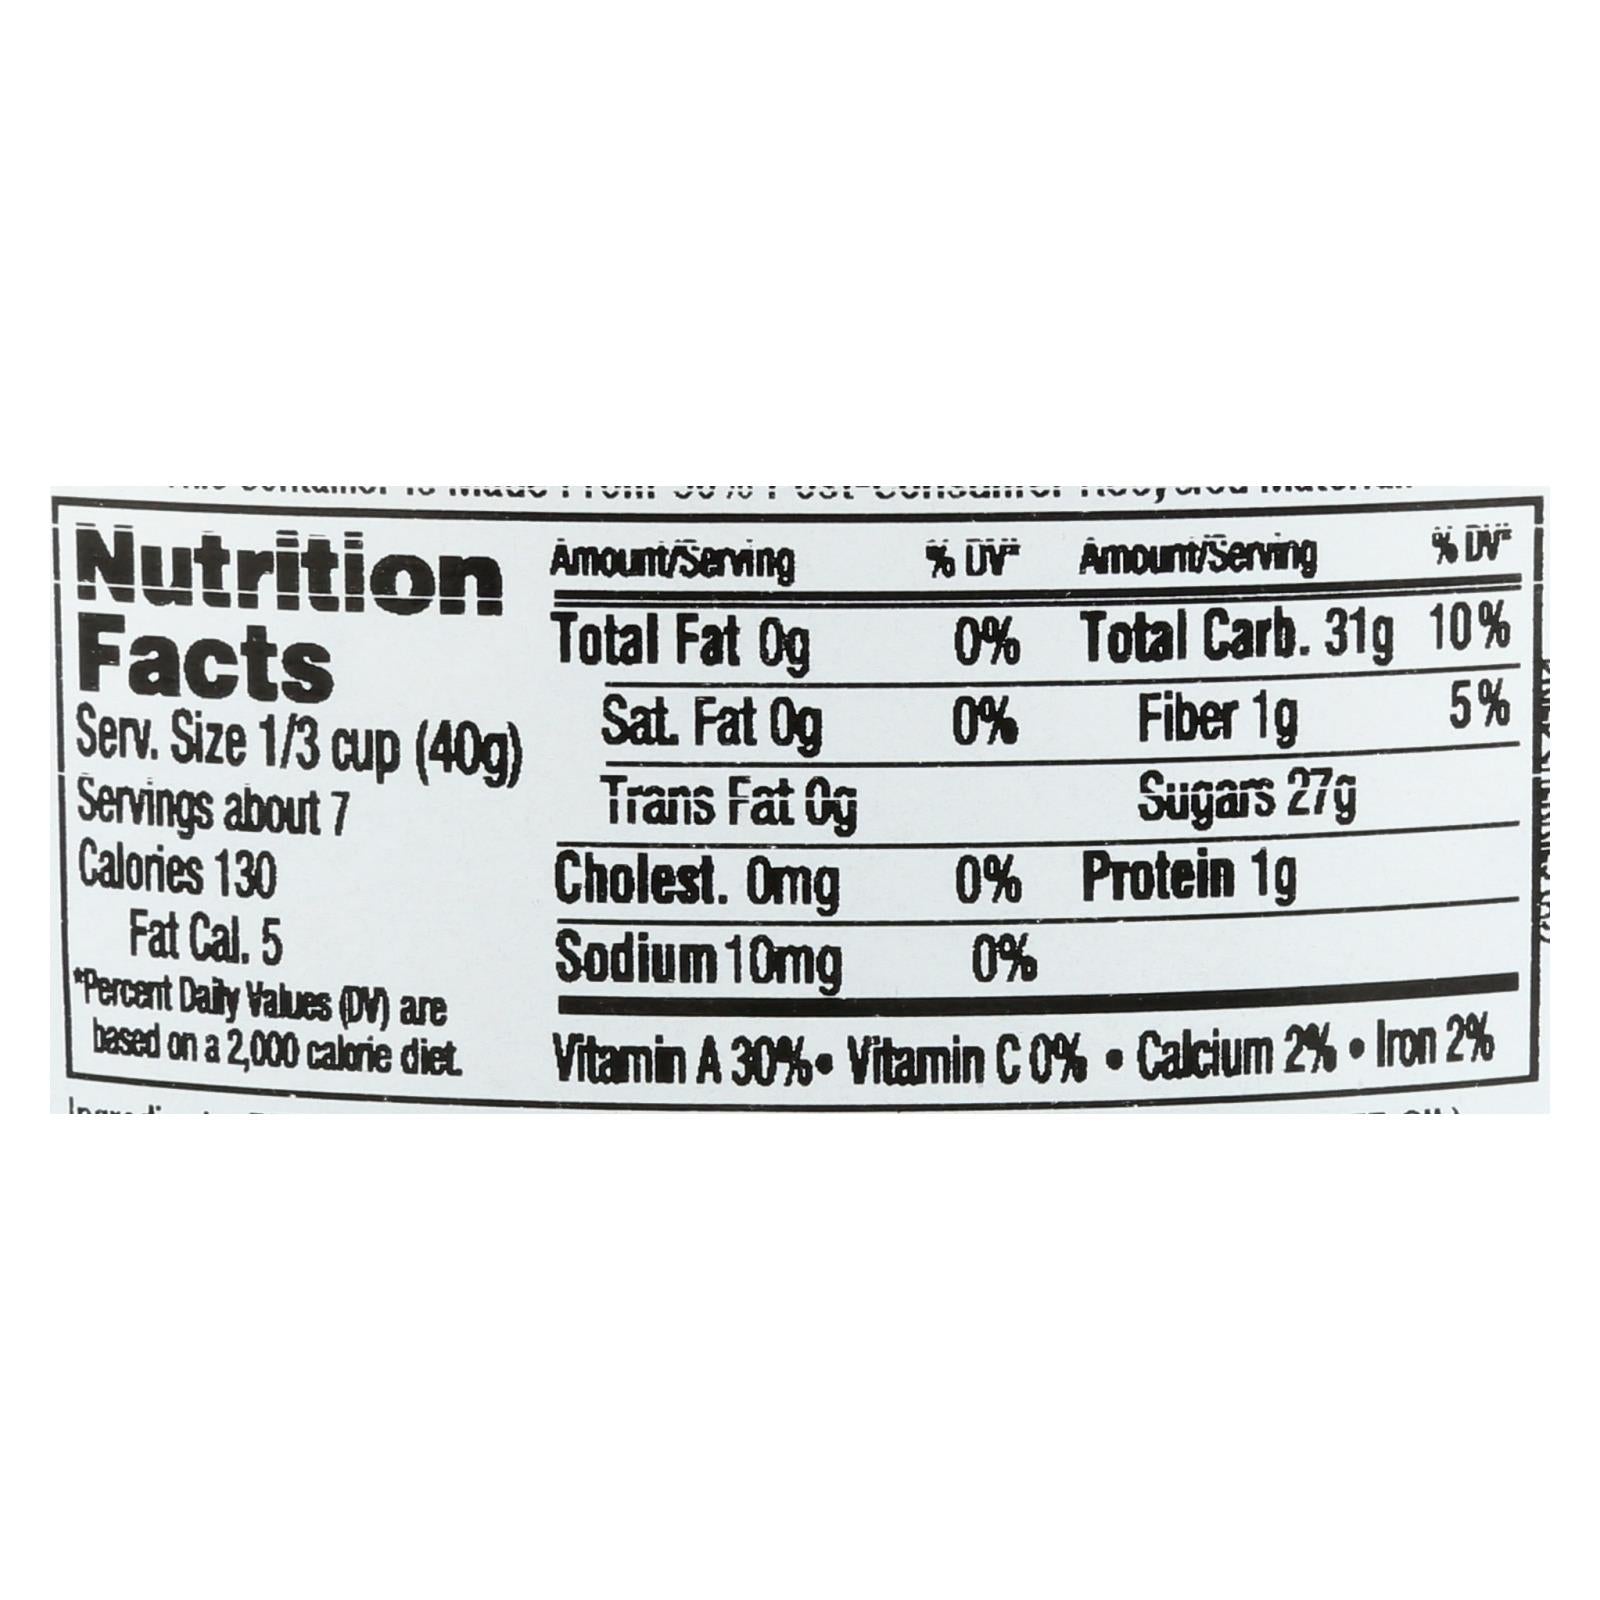 Aurora Natural Products, Aurora Natural Products - Apple Juice Infused Cherries - Case of 12 - 10 oz. (Pack of 12)